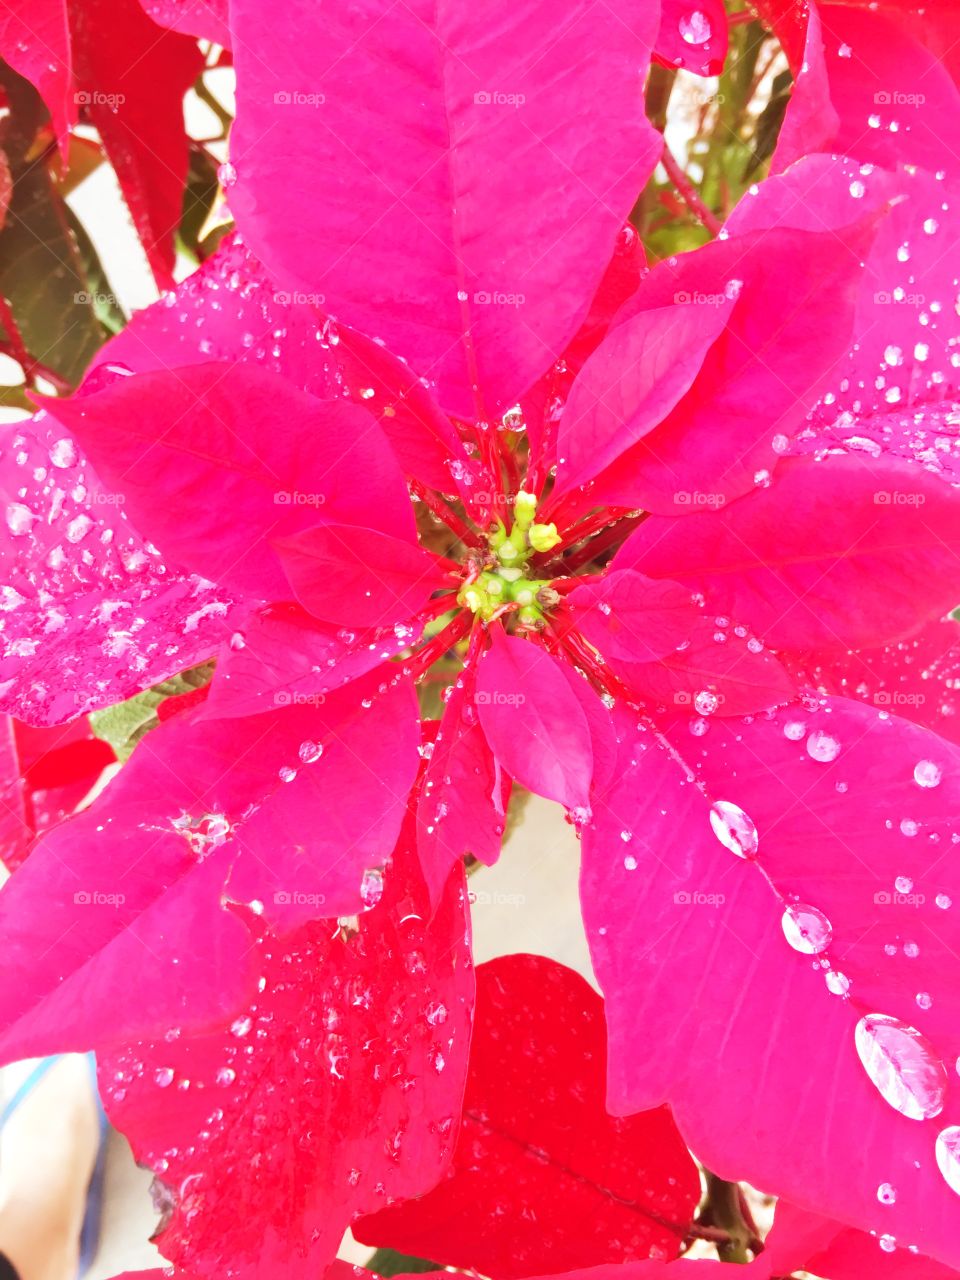 Poinsettia adorned in raindrop jewels.